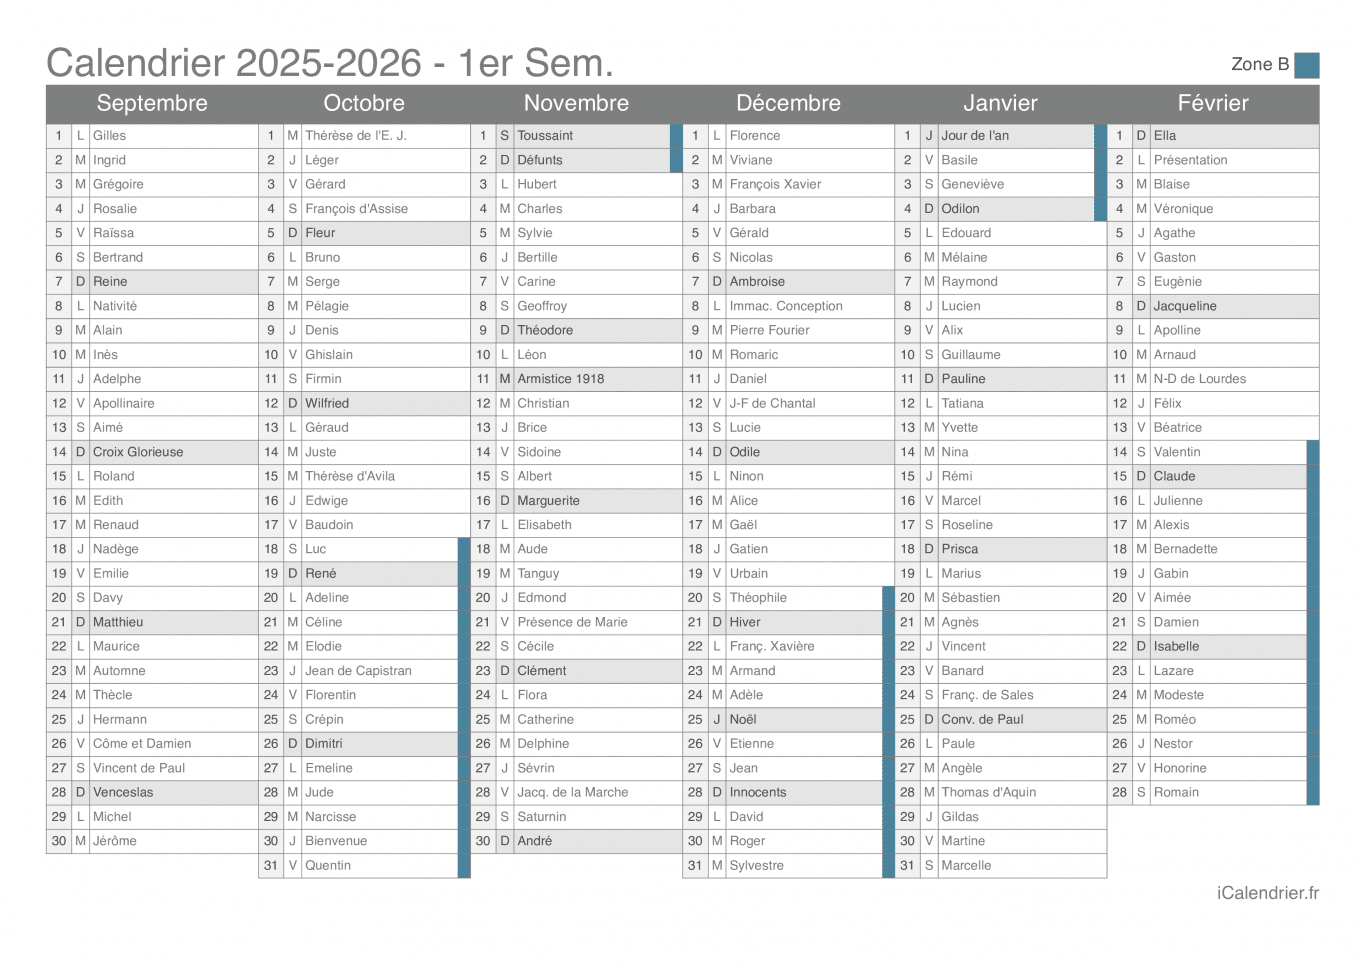 Calendrier des vacances scolaires 2025-2026 par semestre, zone B, avec fête du jour